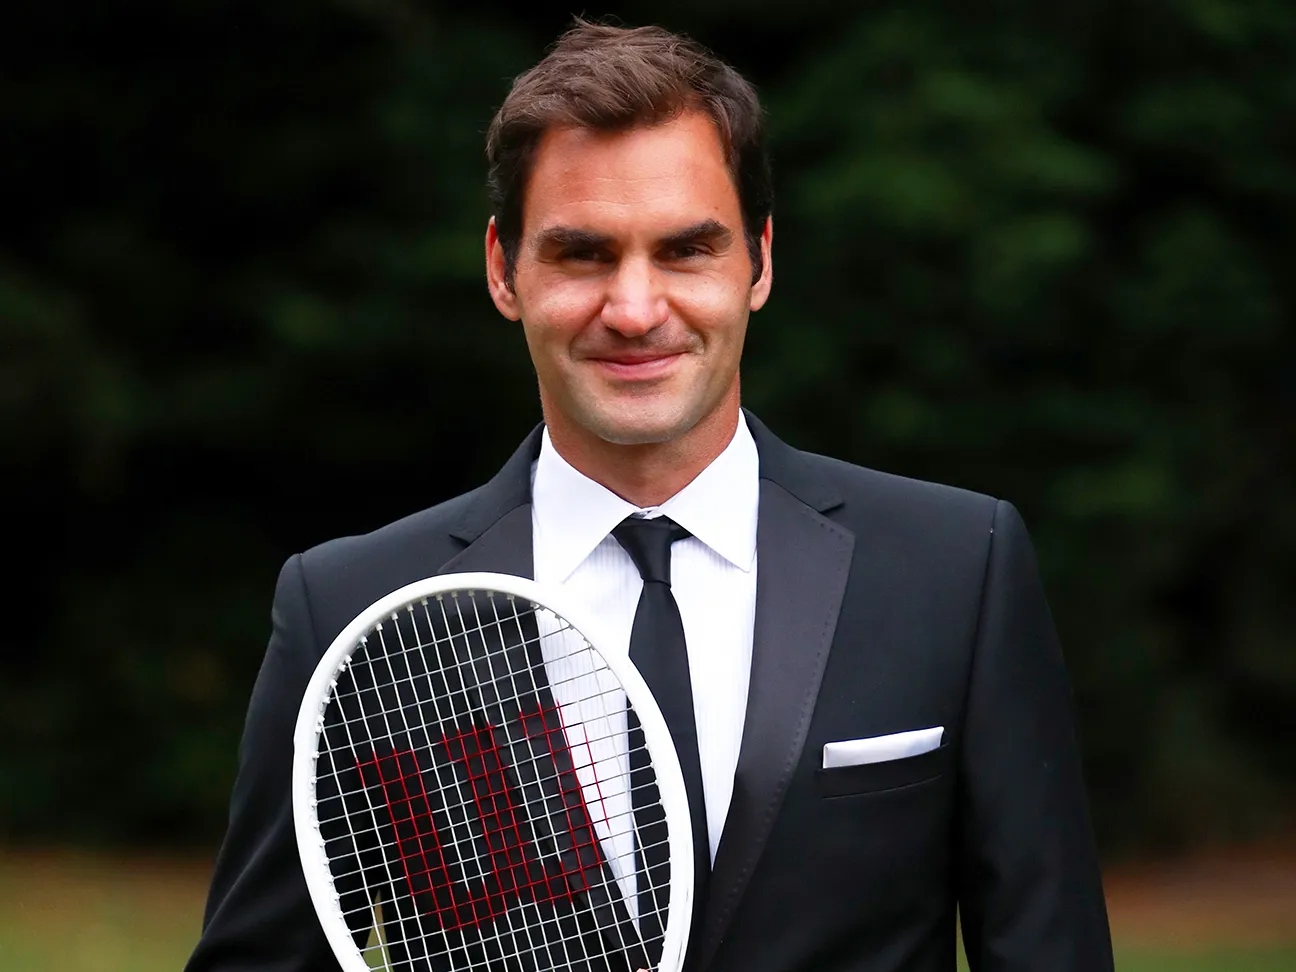 Roger_Federer_Tennis_Career_Milestones.jpg